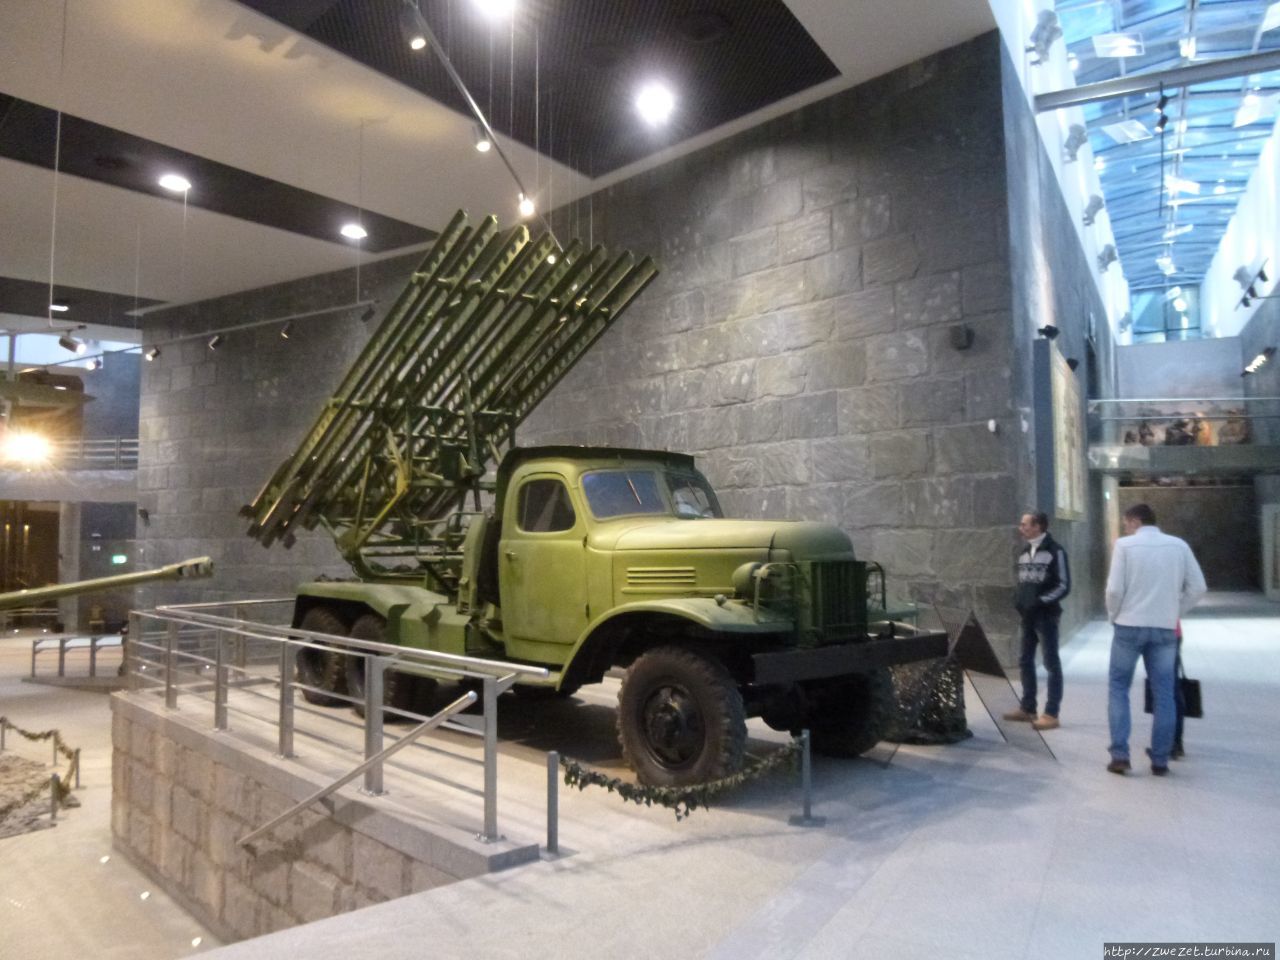 музей великой отечественной войны в минске